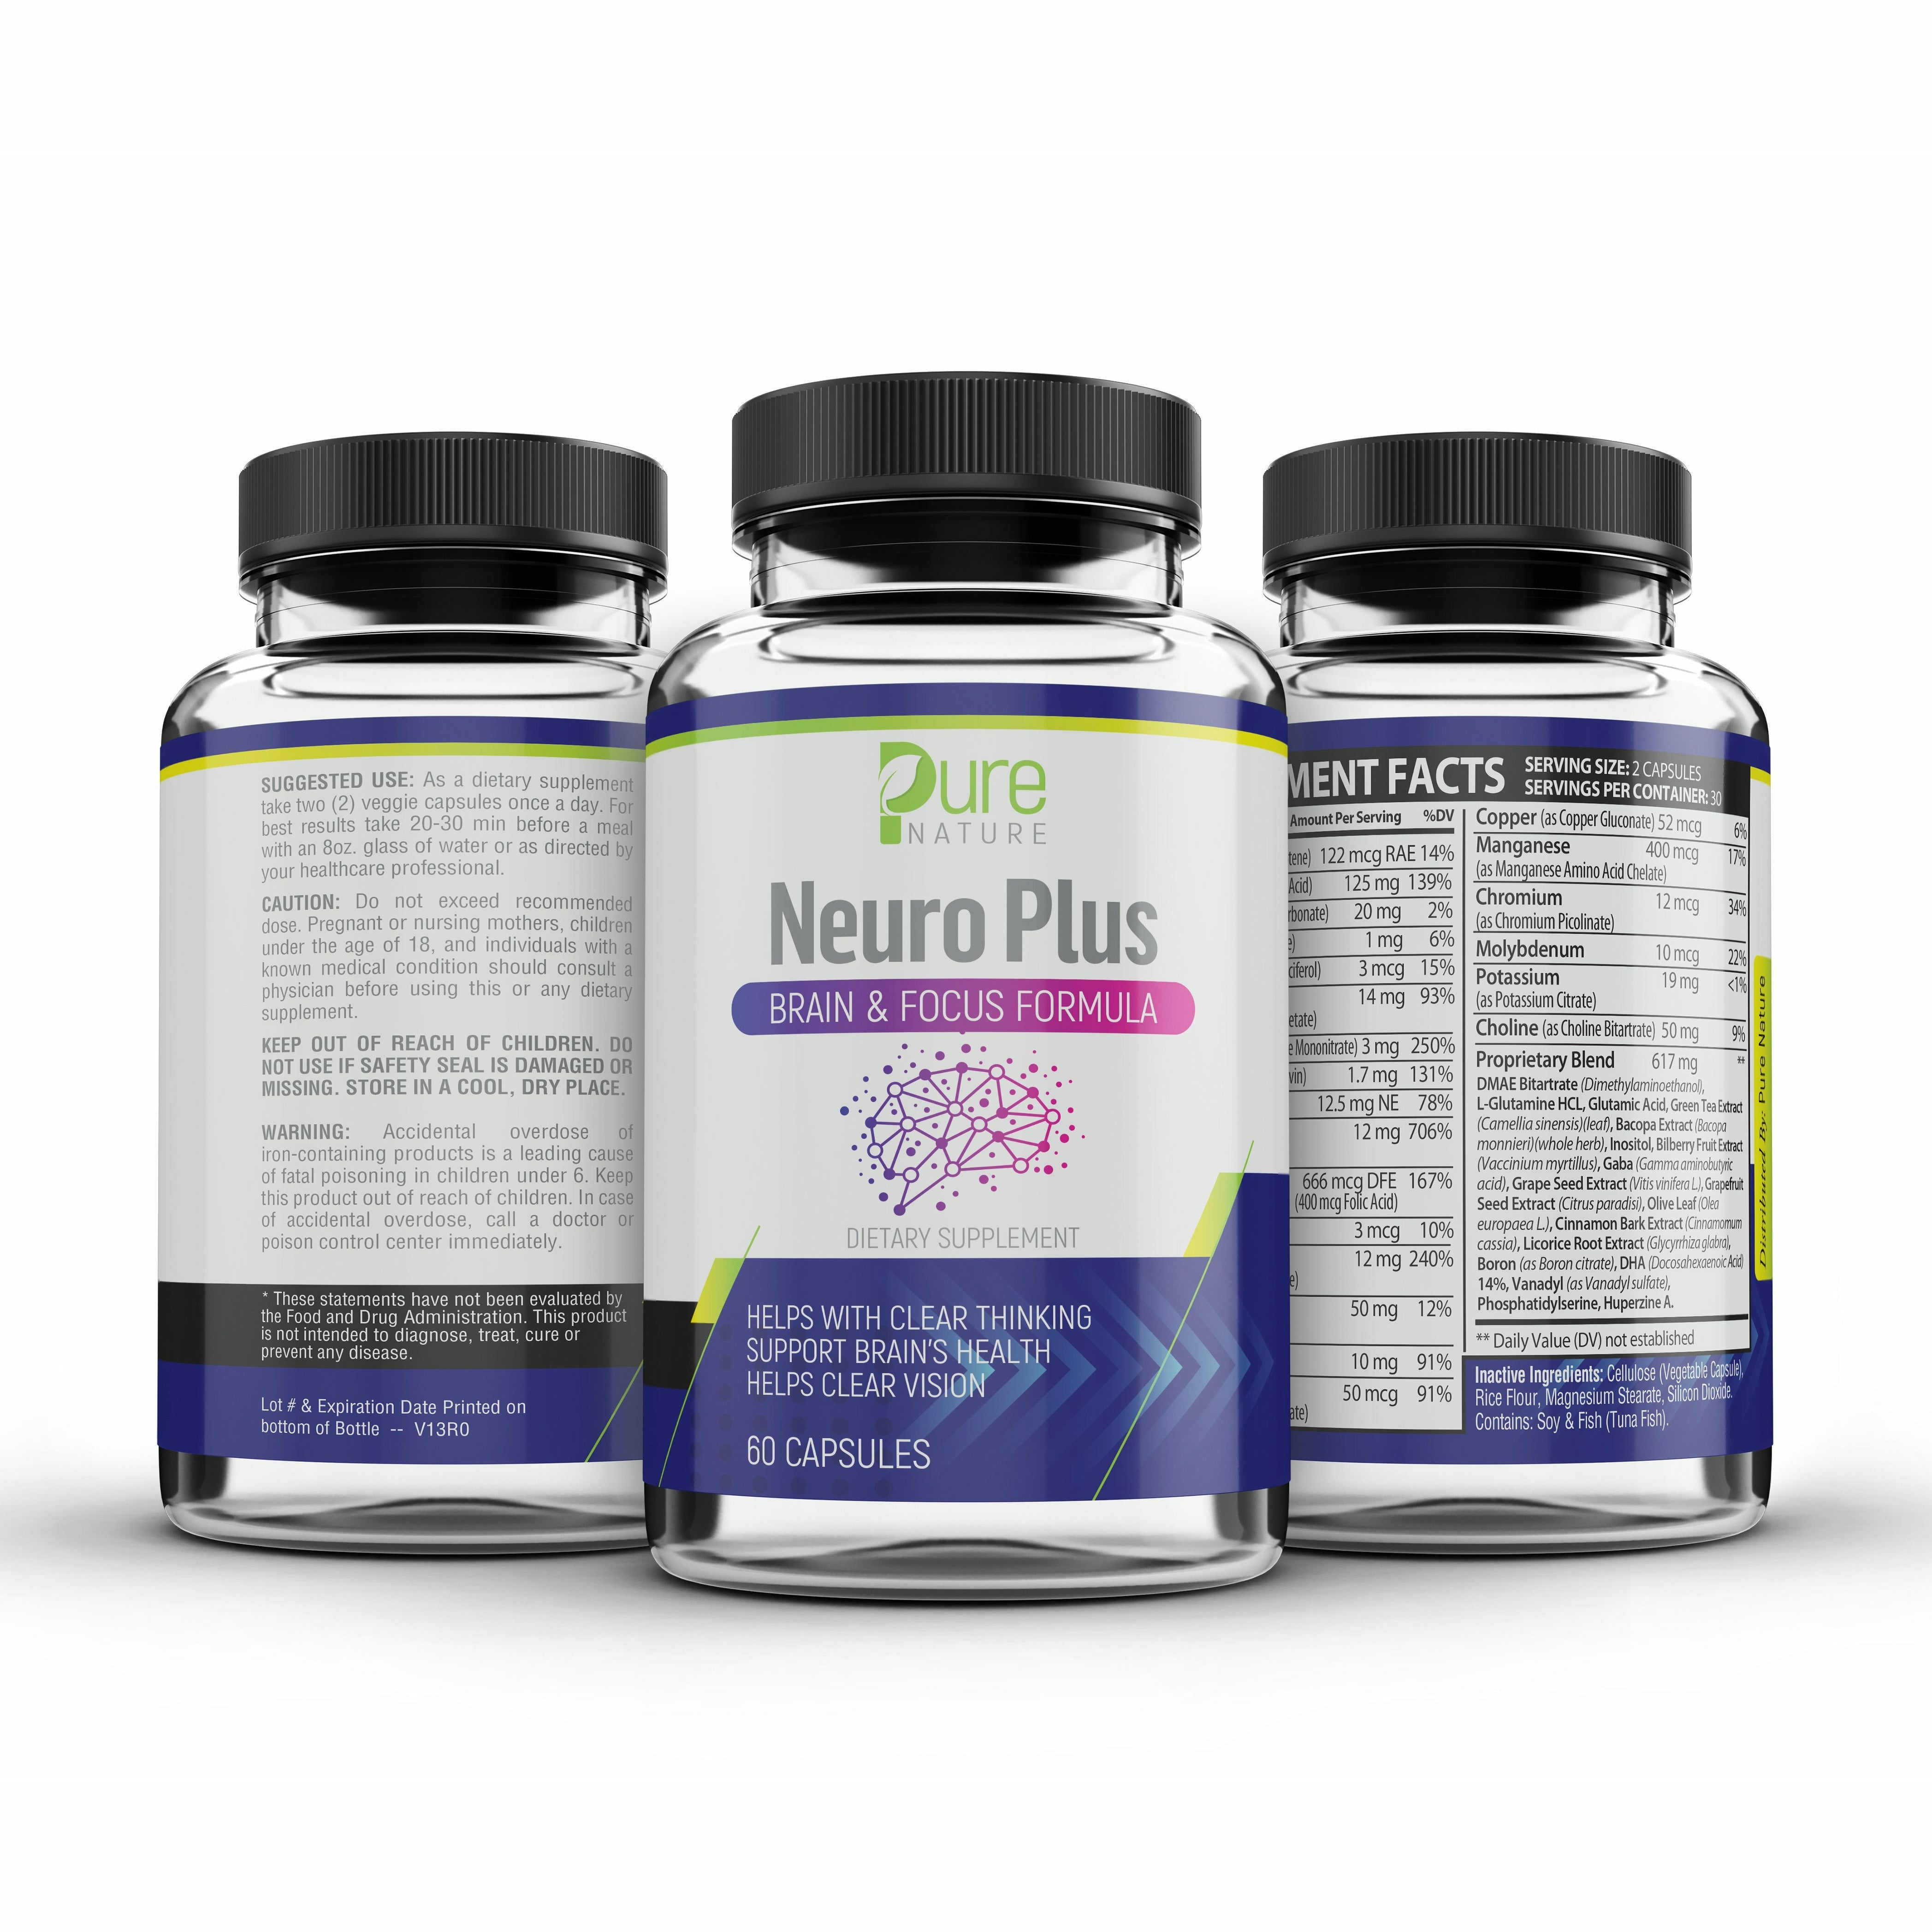 Pure Nature Neuro Plus Brain & Focus Formula (Pack of 2)